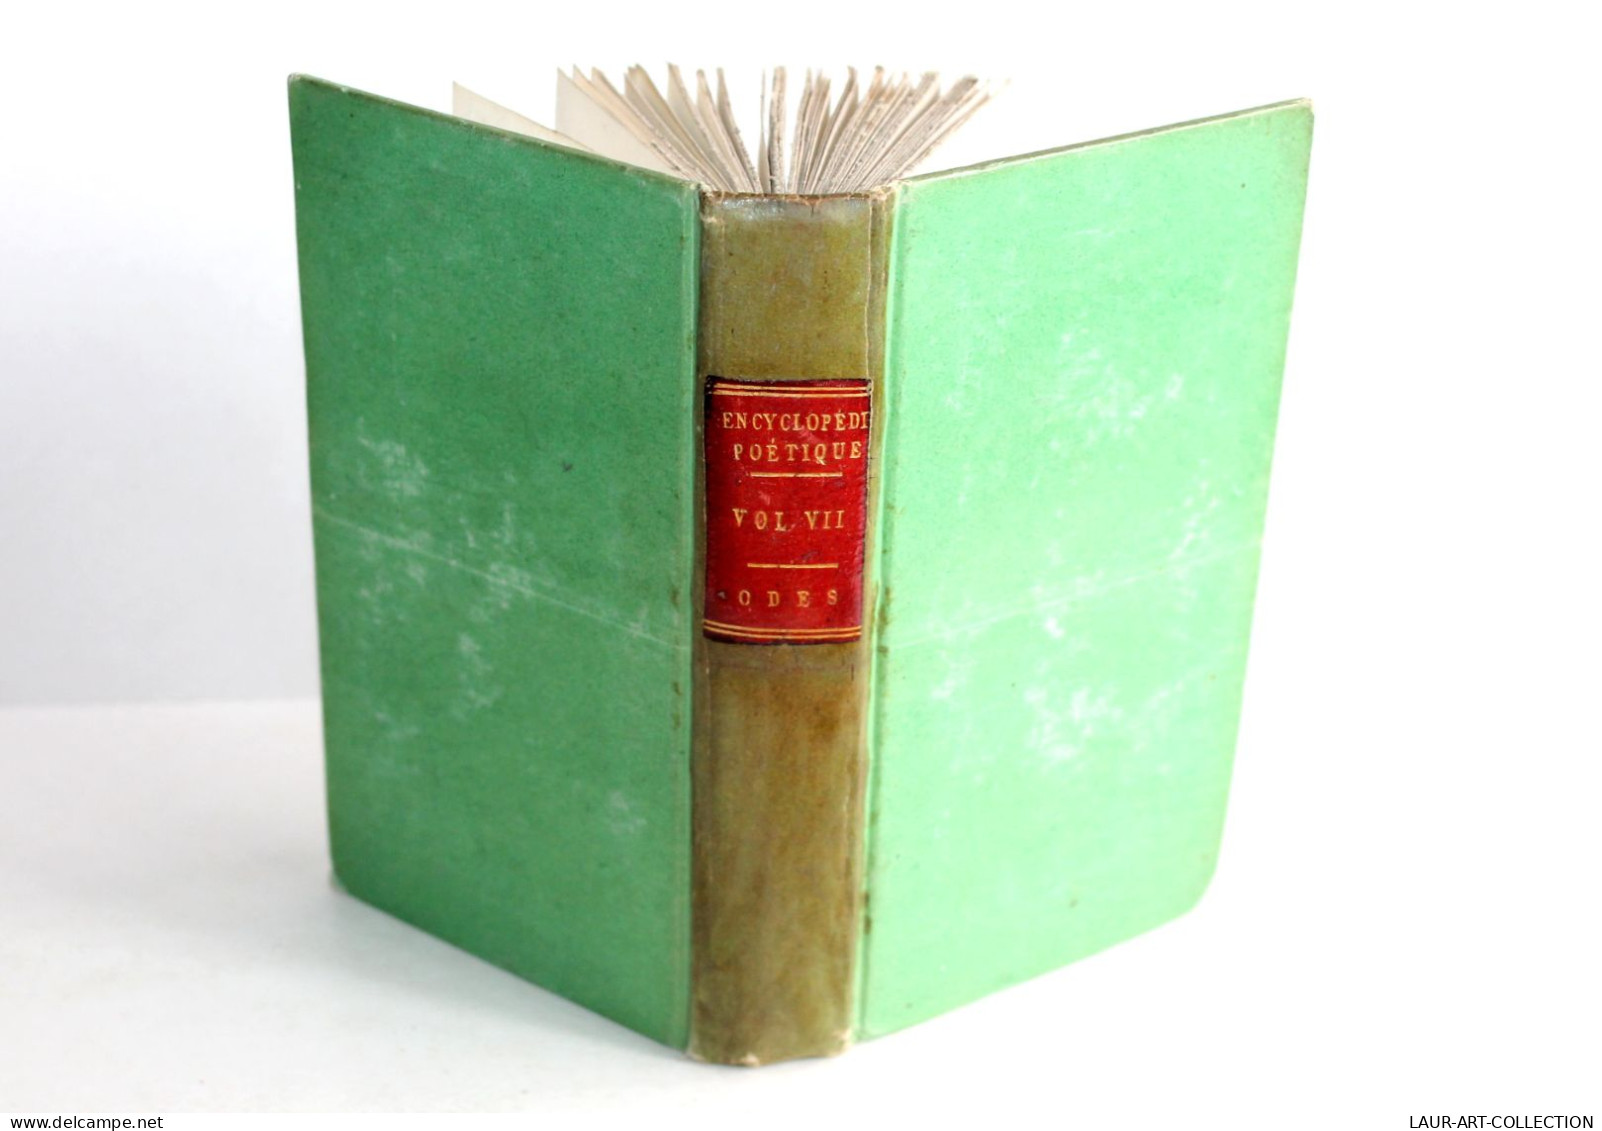 PETITE ENCYCLOPEDIE POETIQUE CHOIX POESIES TOUS GENRES CONTENANT 50 ODES 1804 T7 / ANCIEN LIVRE XIXe SIECLE (1803.184) - Autores Franceses